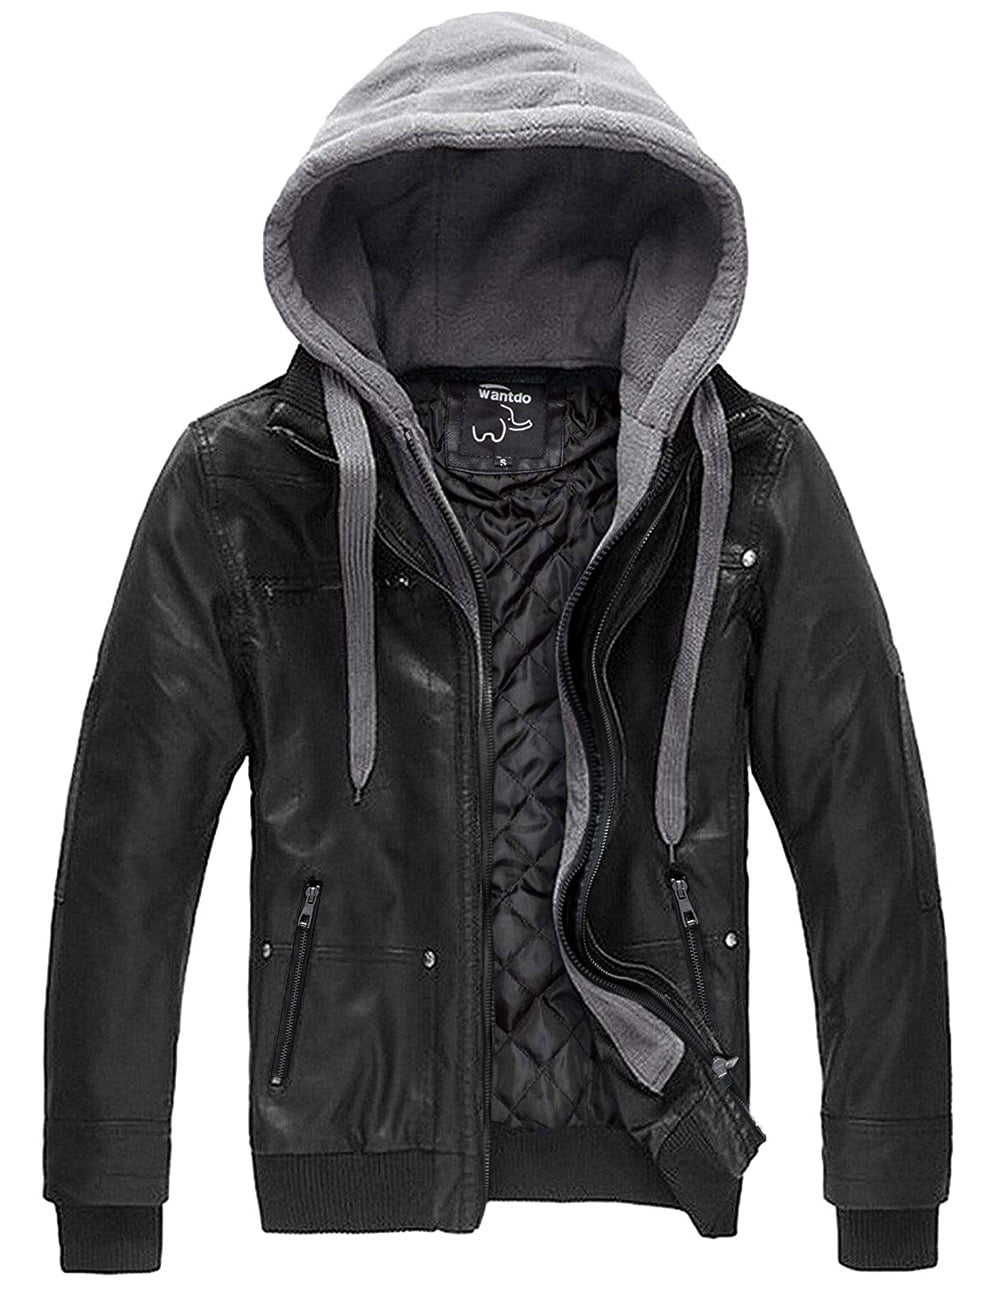 Wantdo Boy's Faux Leather Jacket Waterproof Zipper Coat with Removable Hood 